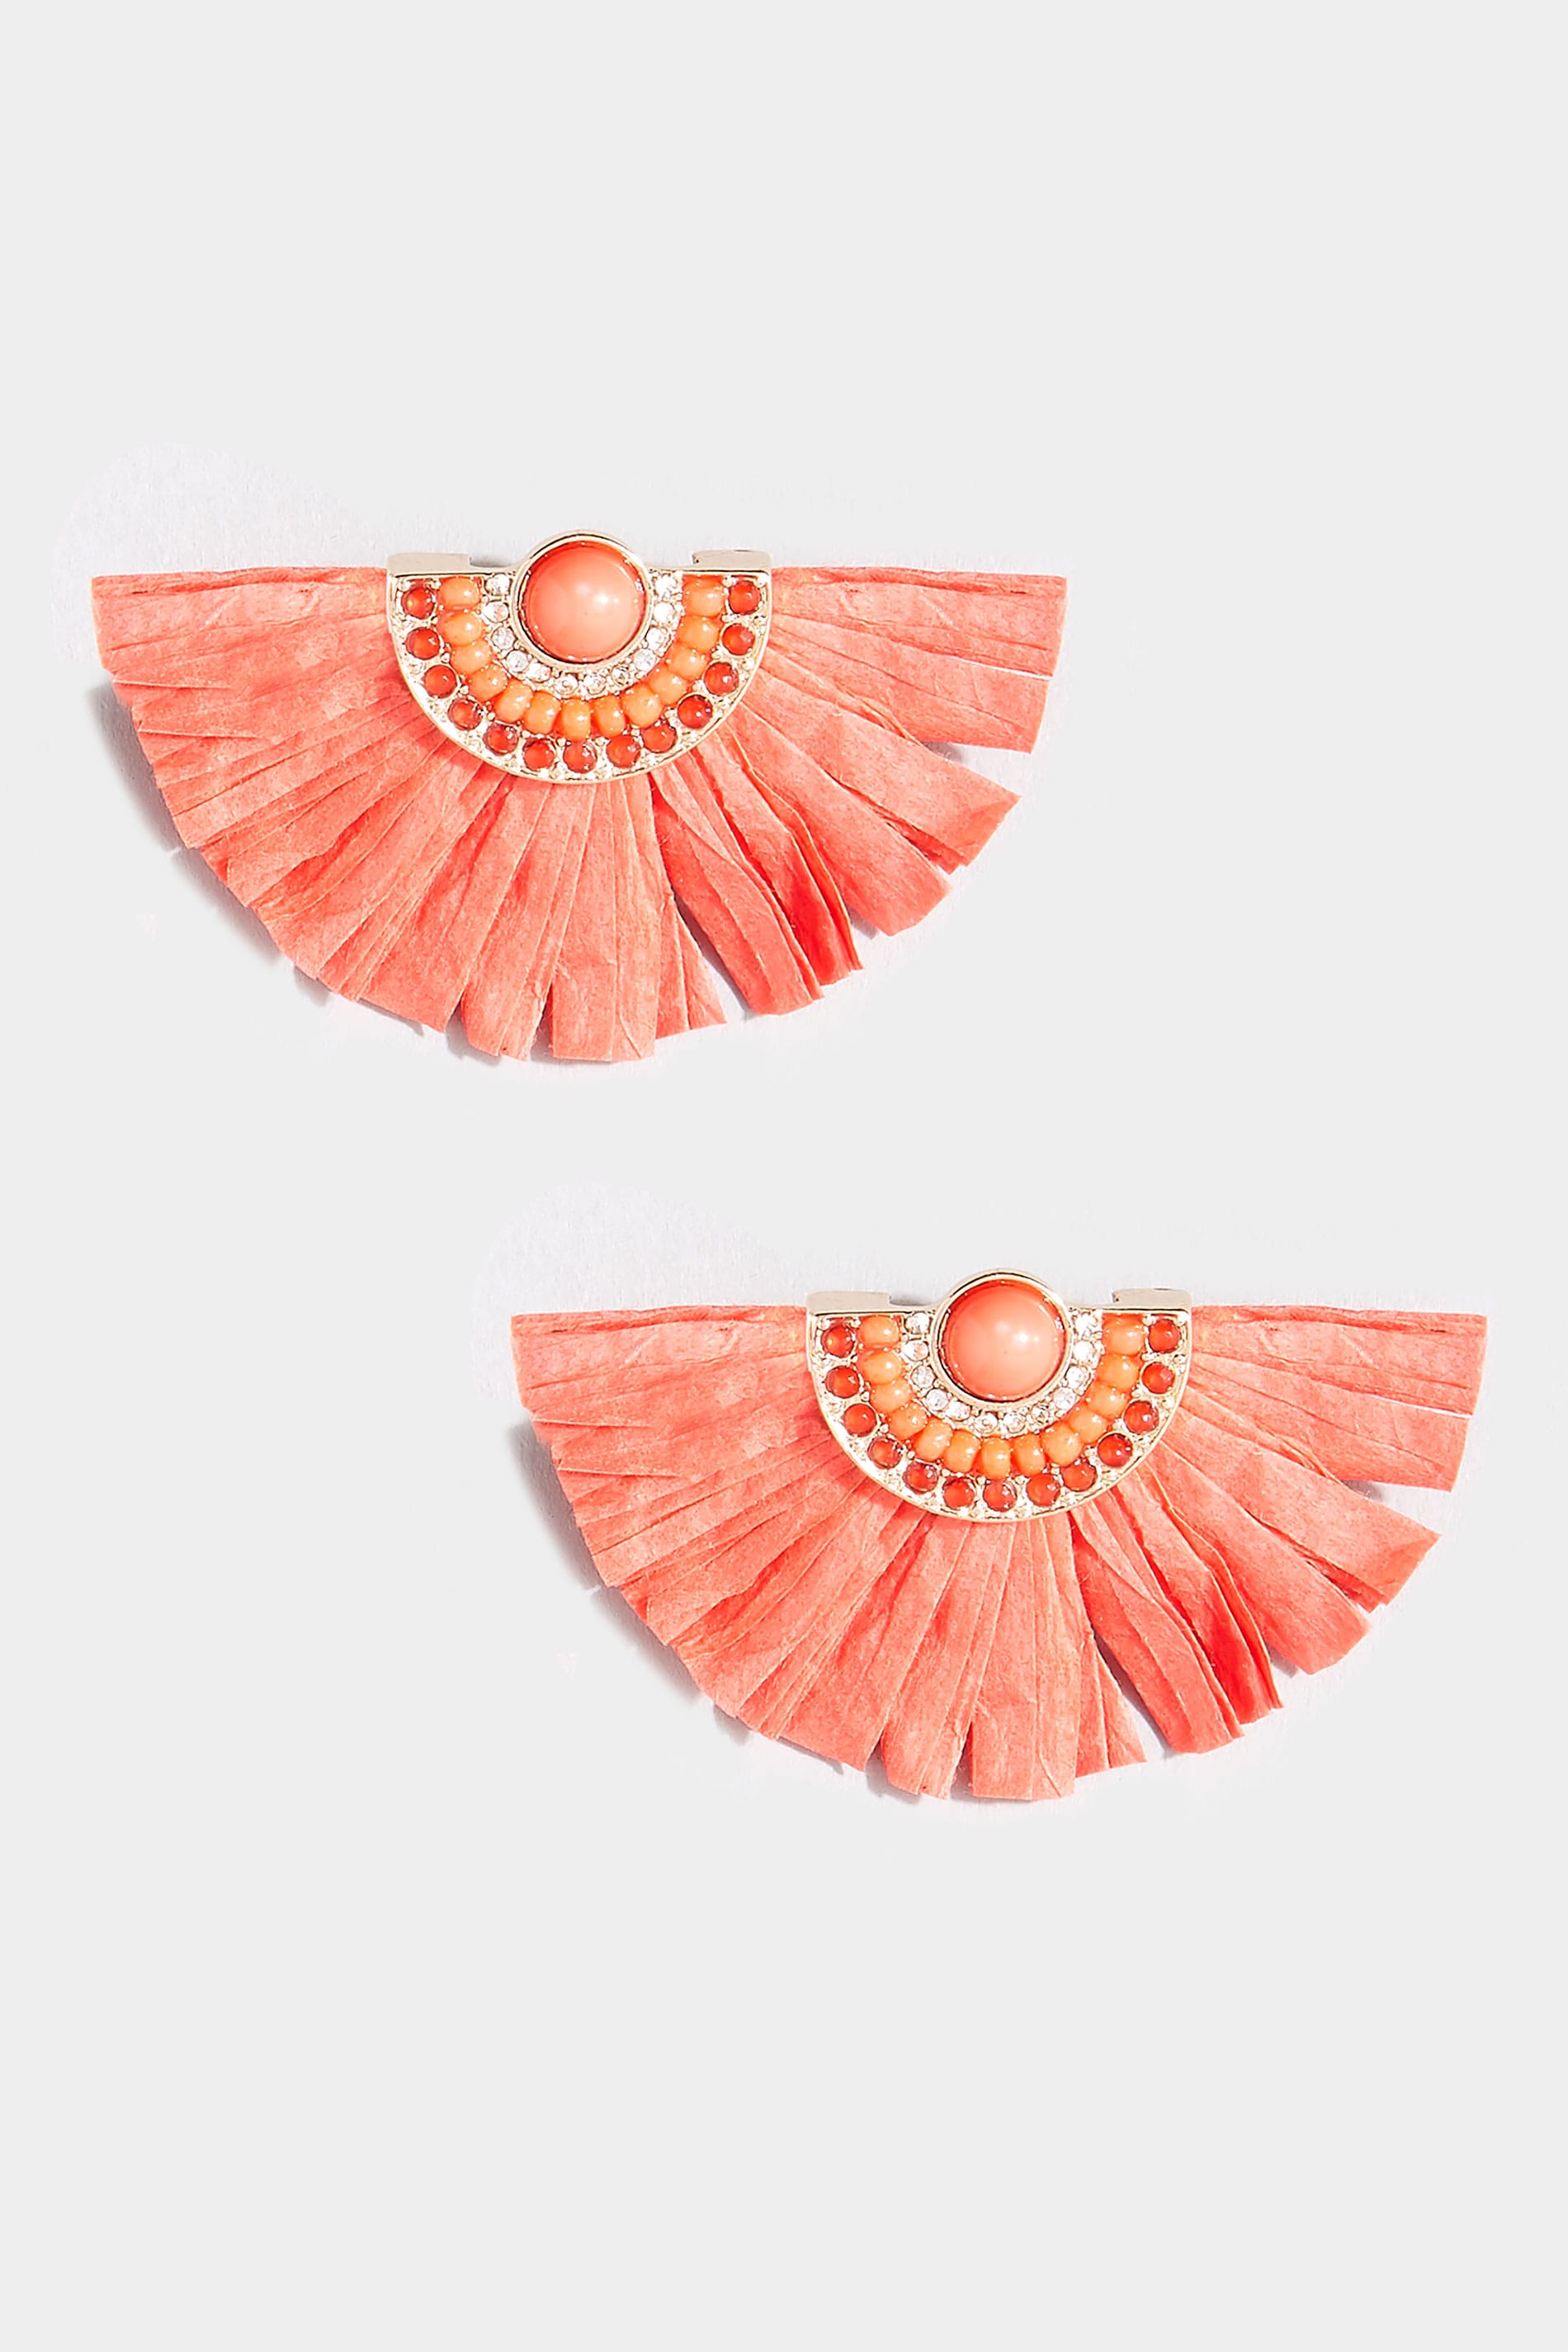 Coral Orange Raffia Fan Earrings | One Size | Yours Clothing 2